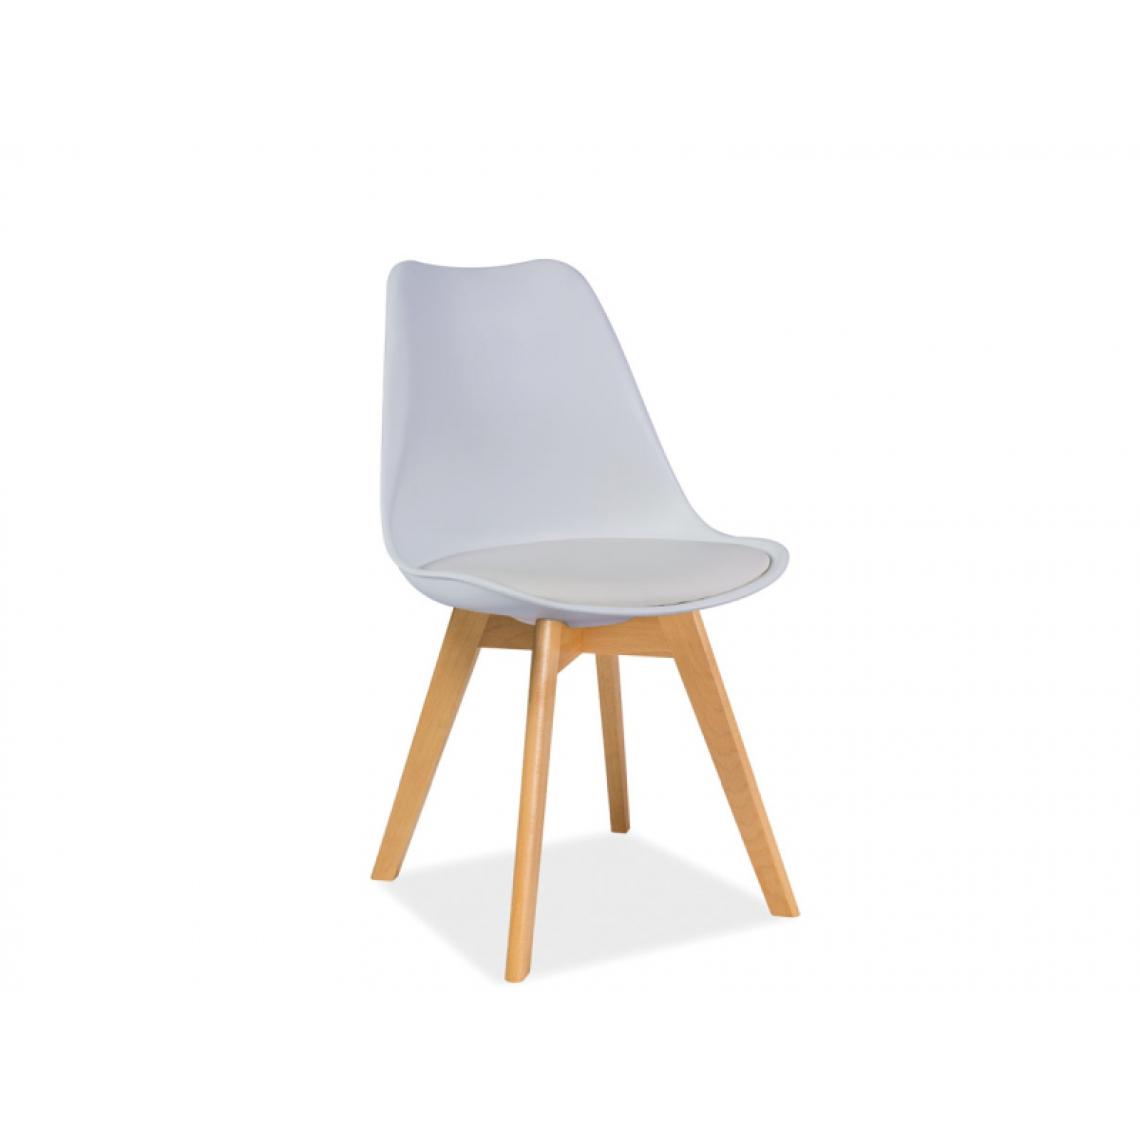 Hucoco - KRIZ | Chaise style scandinave salle à manger/salon/bureau | Dimensions : 83x49x43 cm | Assise en cuir écologique | Base en bois - Blanc - Chaises